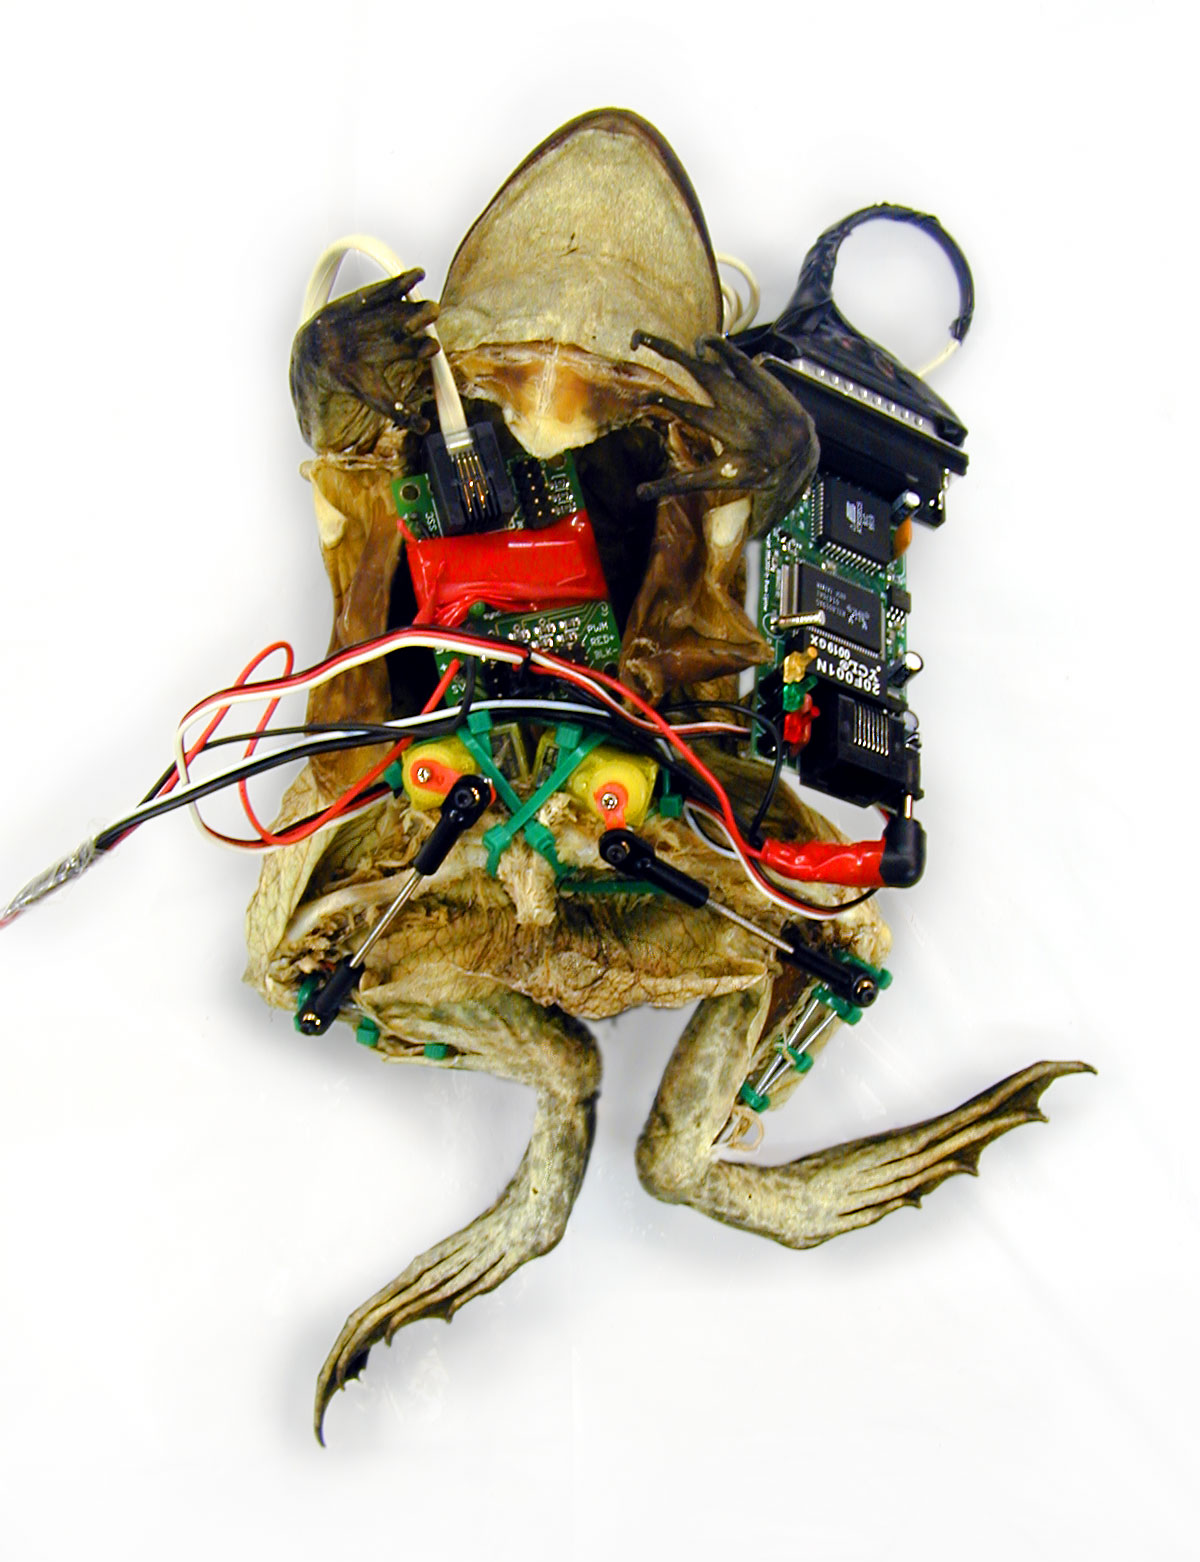 Garnet Hertz - Experiments in Galvanism: Frog with Implanted Webserver